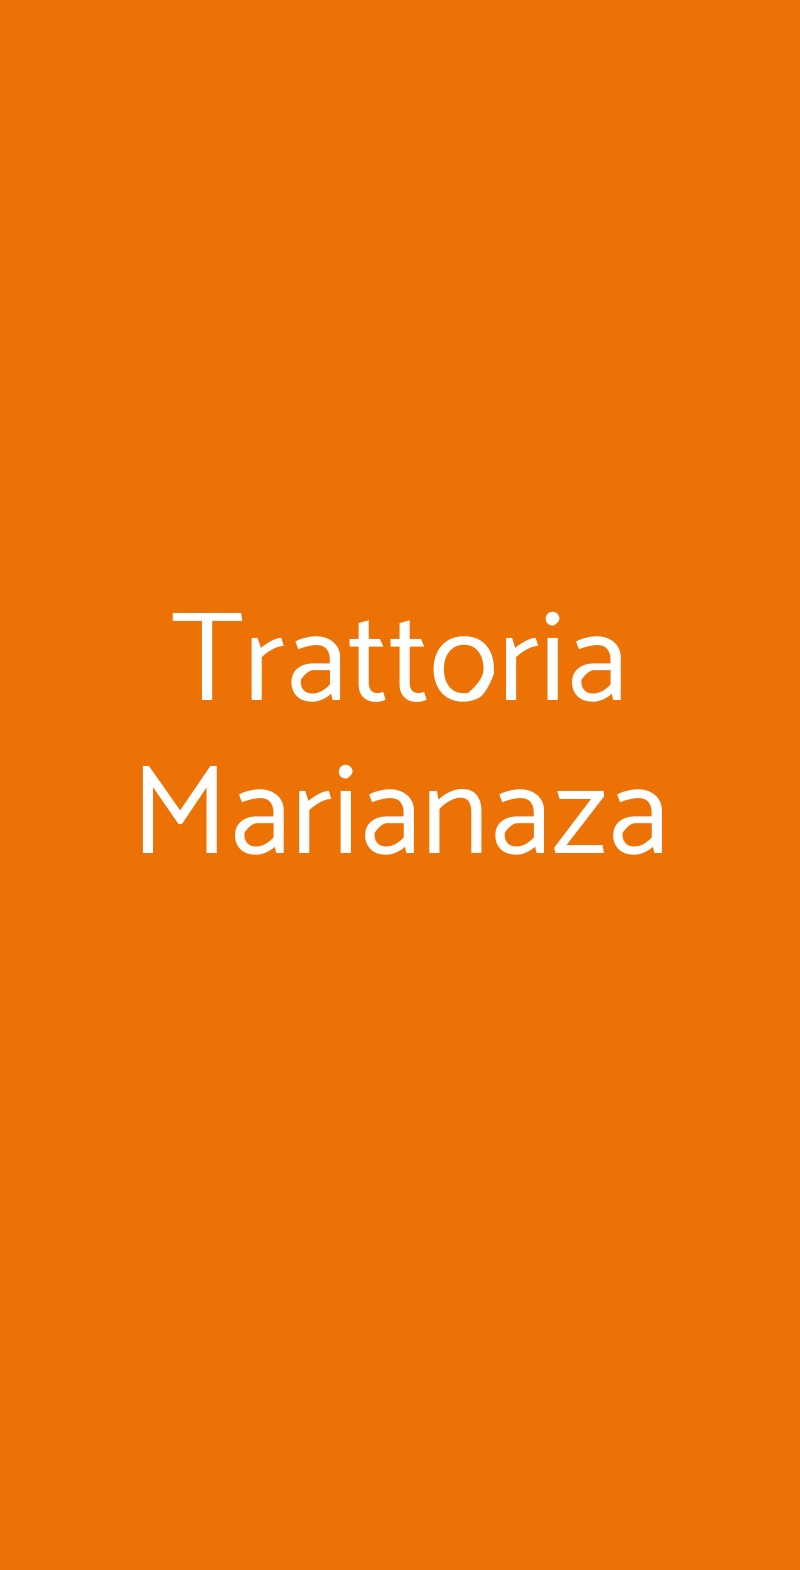 Trattoria Marianaza Faenza menù 1 pagina